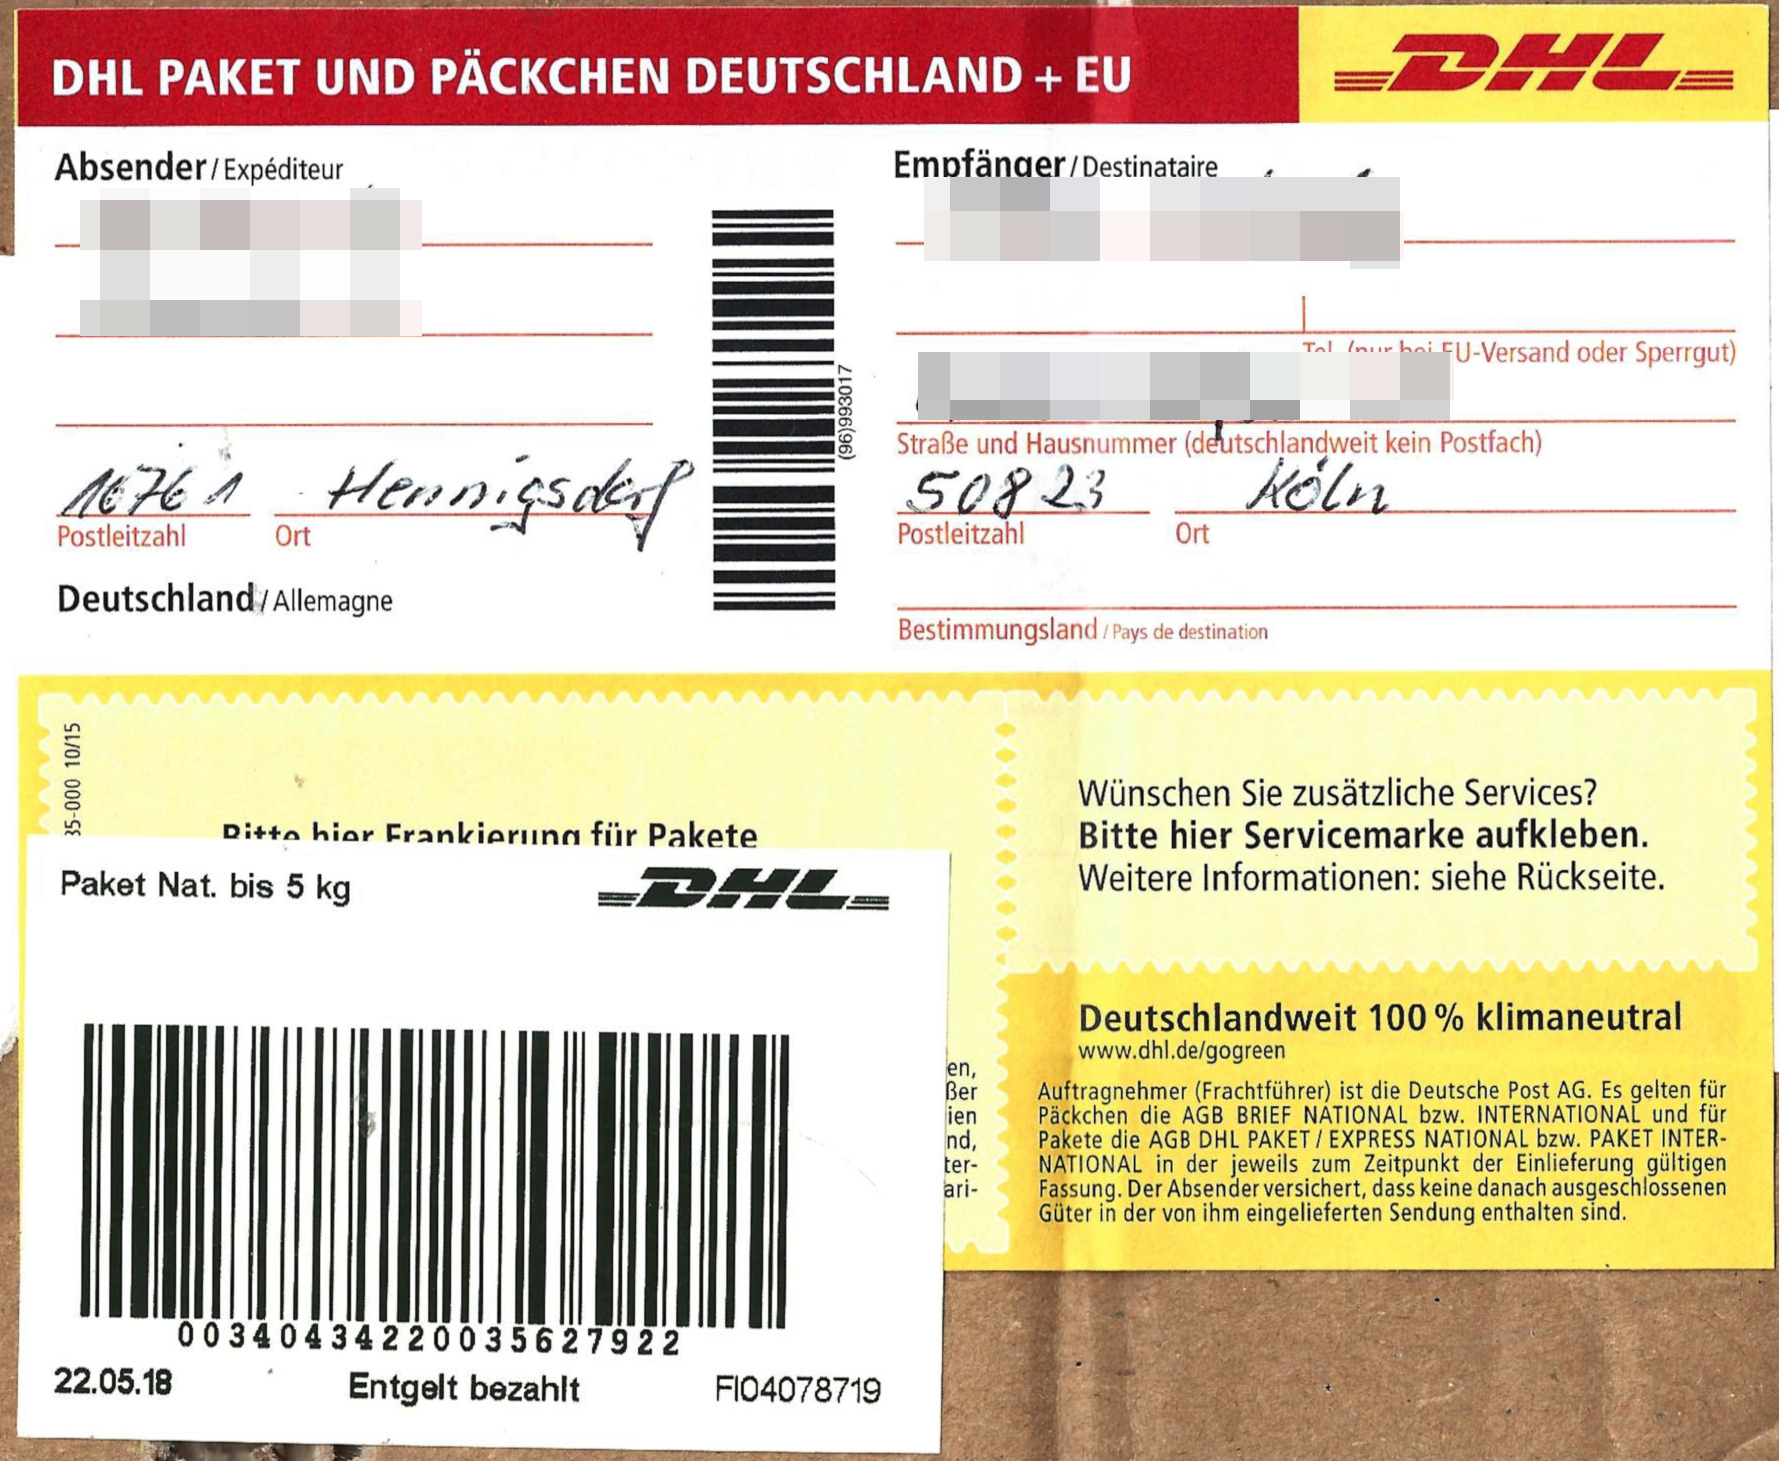 Teoretisk sollys Lull File:Paketaufkleber DHL innerdeutsch Label Paket Nat. bis 5 kg Entgelt  bezahlt 2018.jpg - Wikimedia Commons